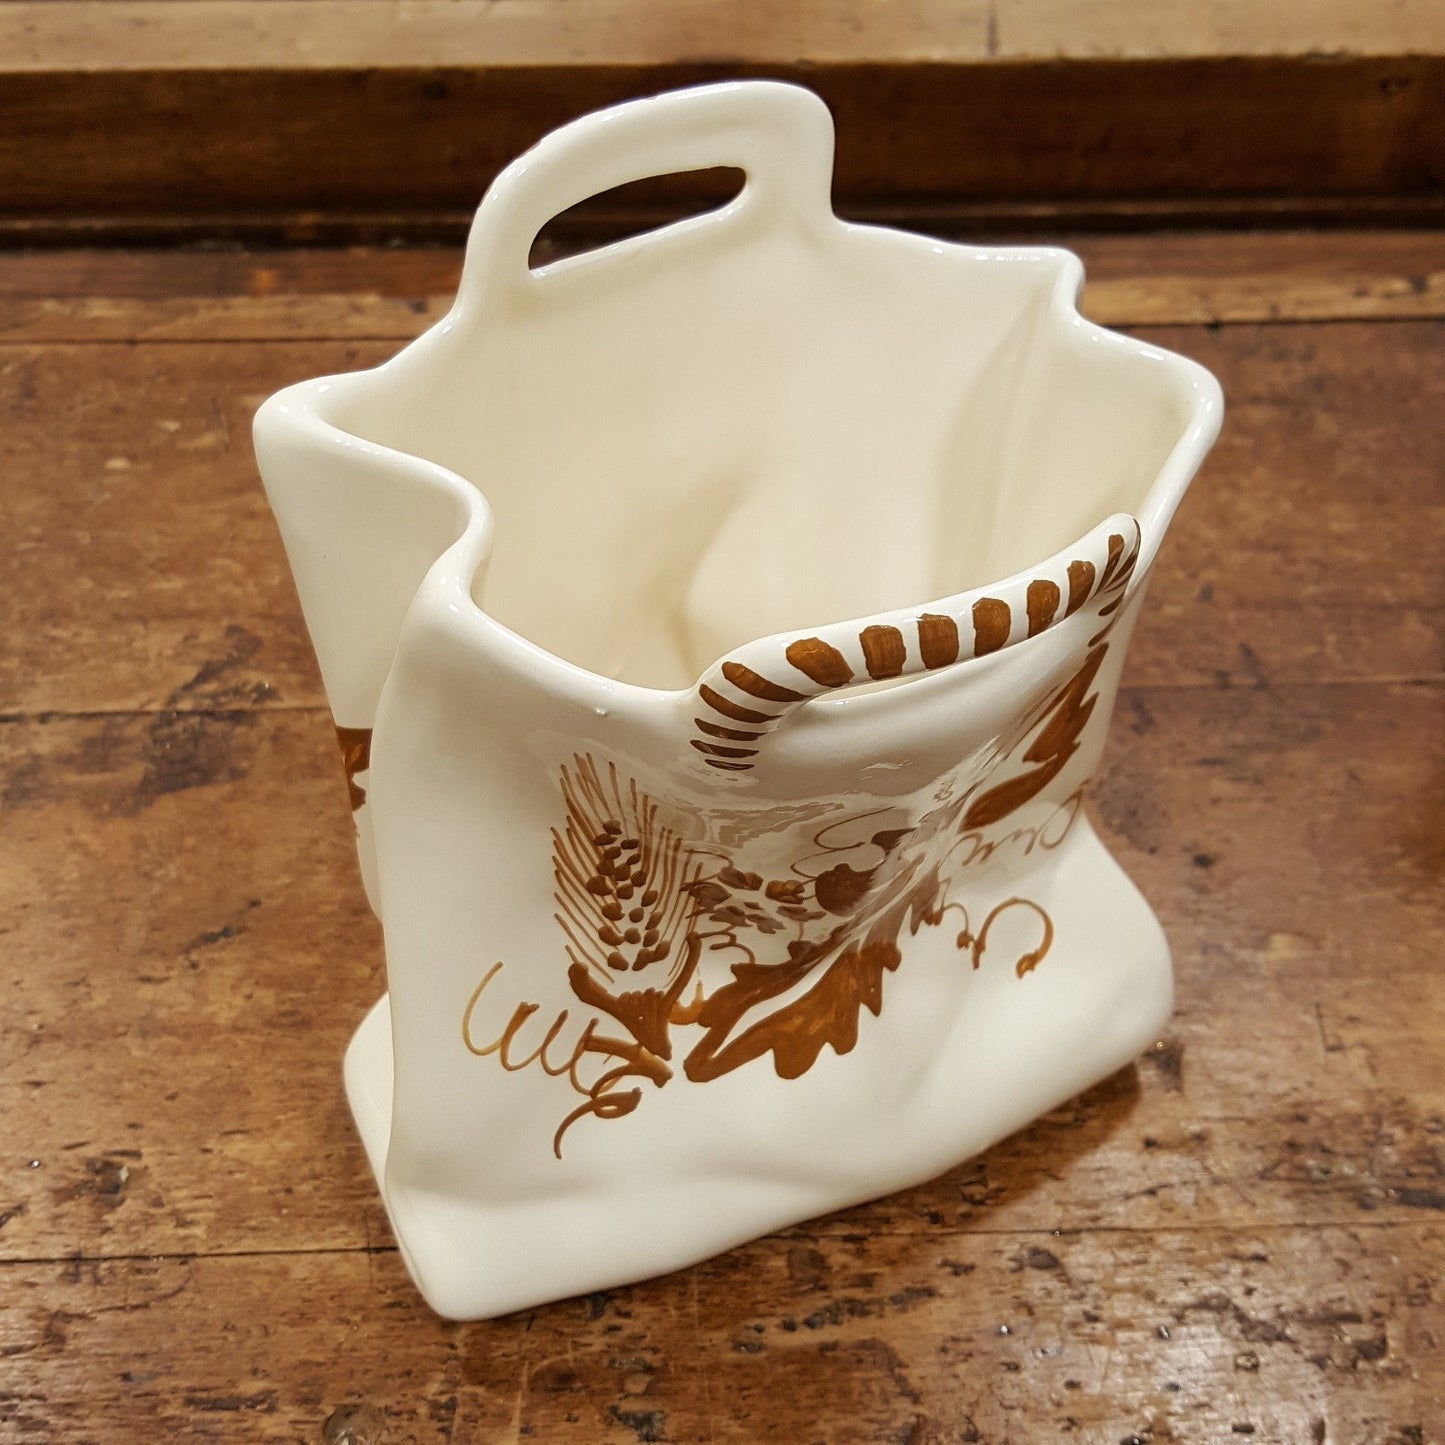 Ceramic flower vase with Romagna decoration